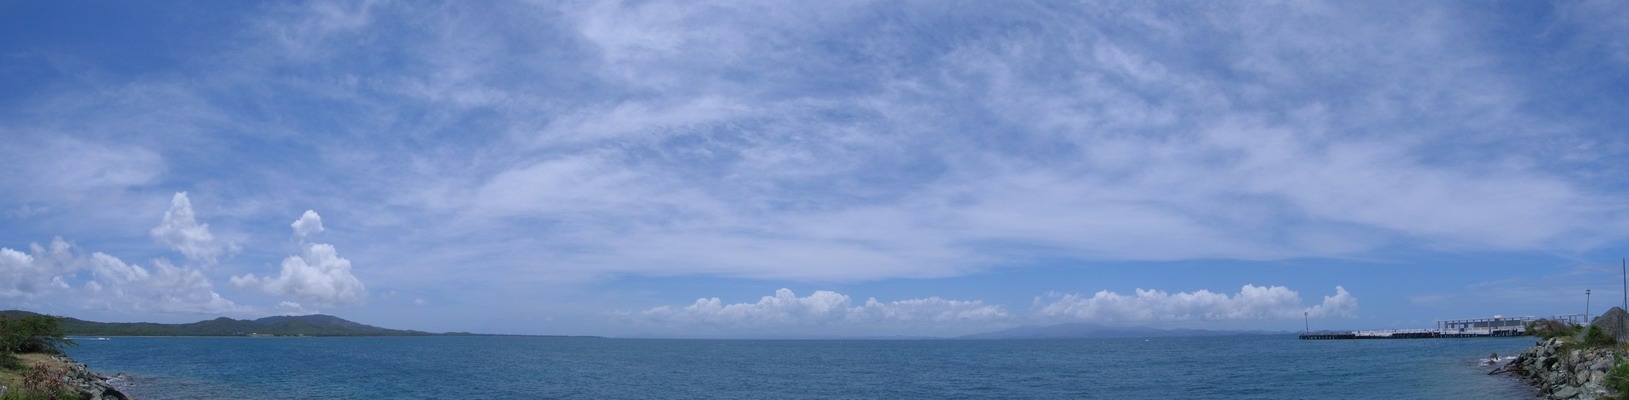 Pohľad smerom na Veľký Ostrov. Výrazná kopovitá oblačnosť v diaľke nad pralesom El Yunque. Vľavo Monte Pirata - najvyšší bod na ostrove (301 m.n.m.). (Apríl 2006)